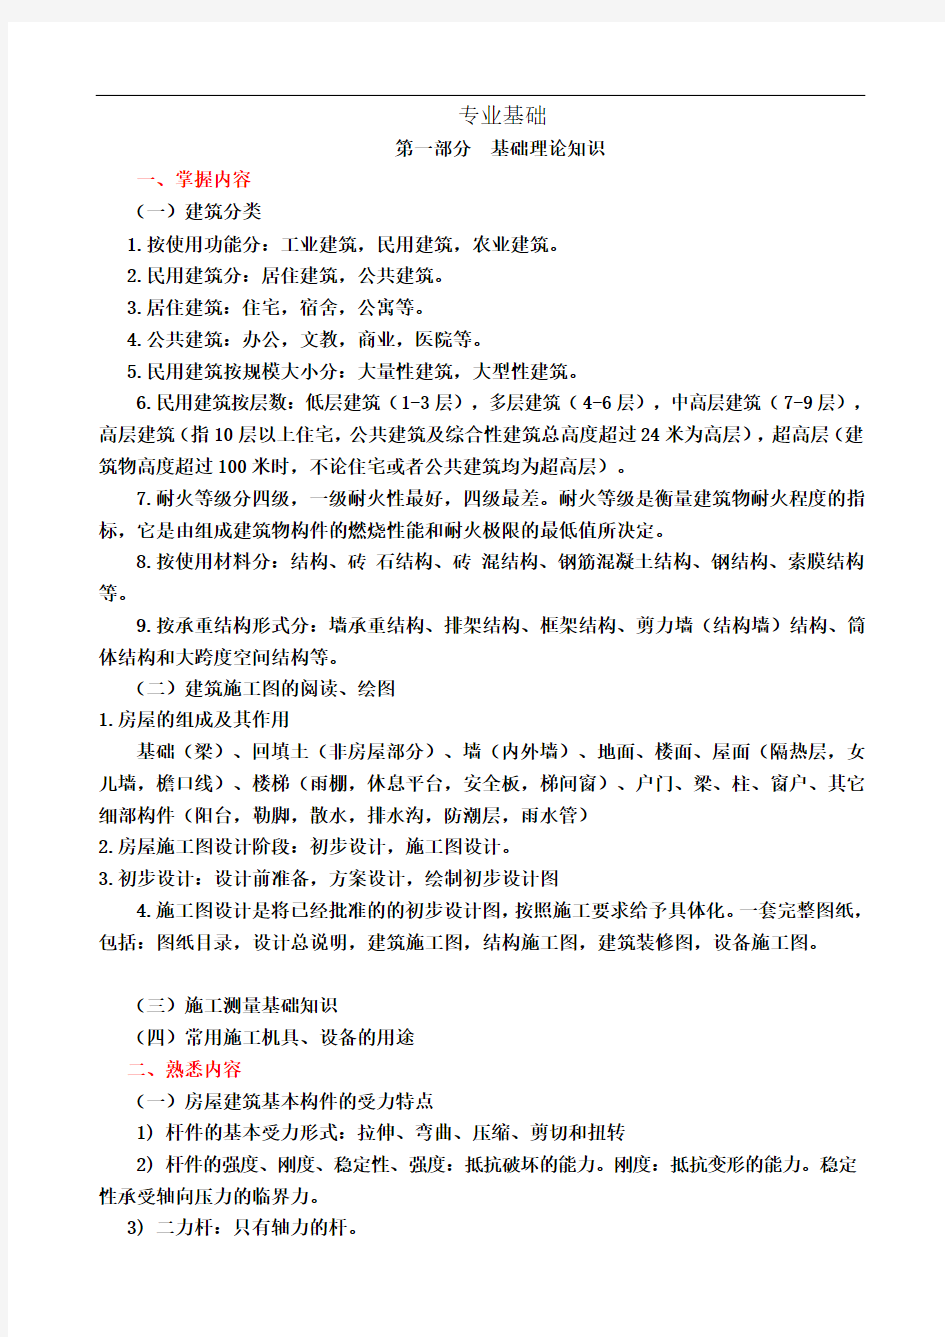 2019北京市《建筑施工专业基础与实务(初级)》考试总结